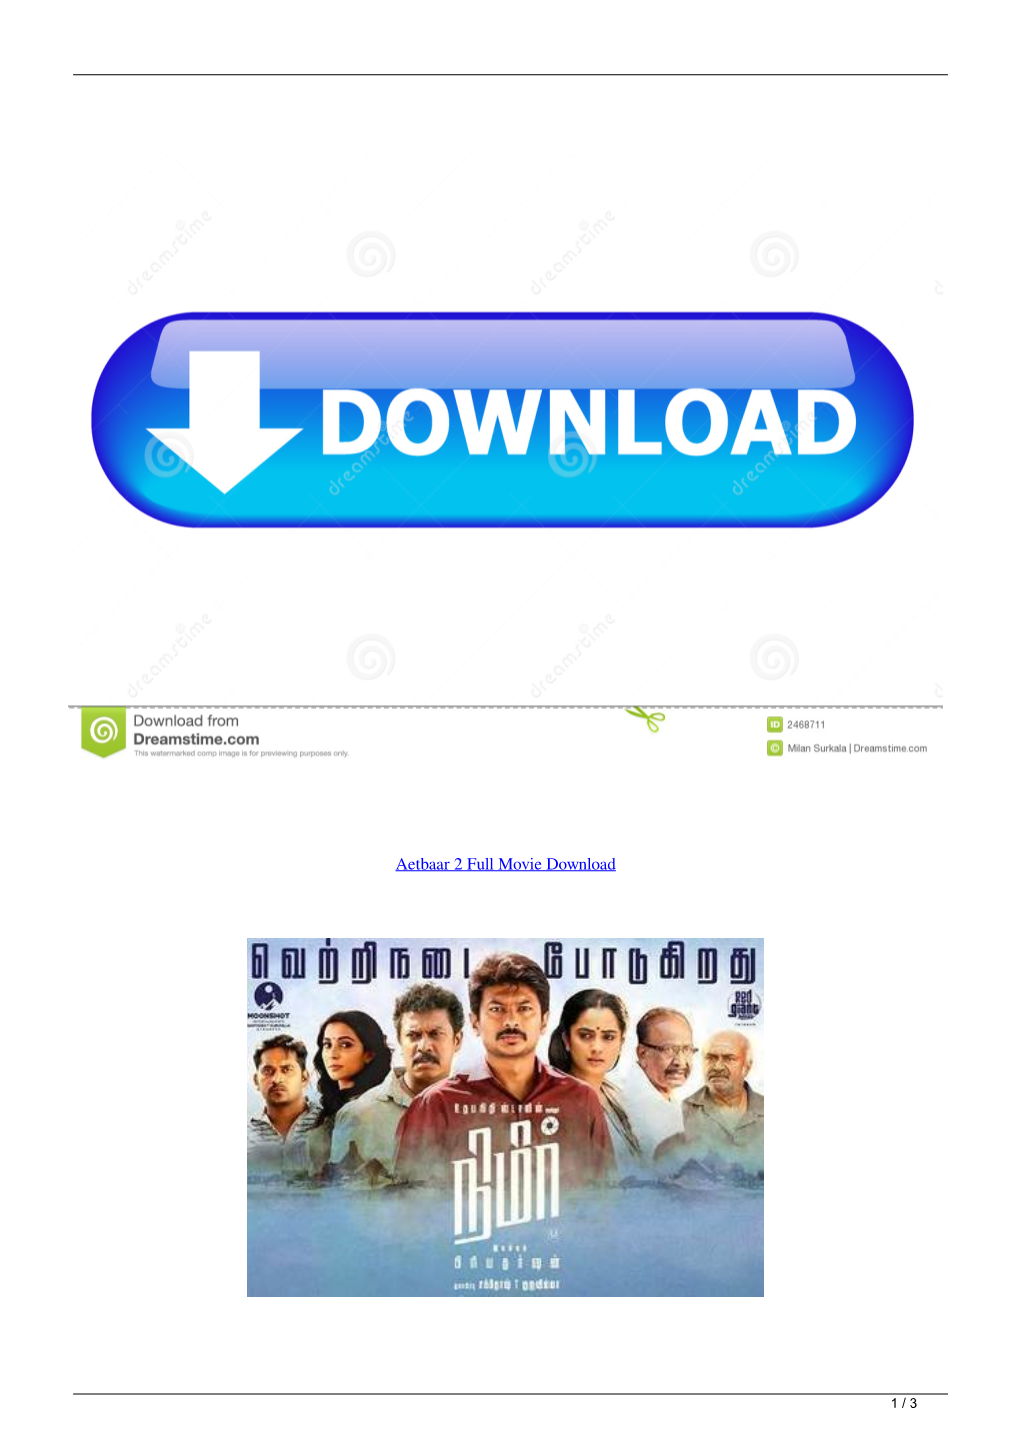 Aetbaar 2 Full Movie Download